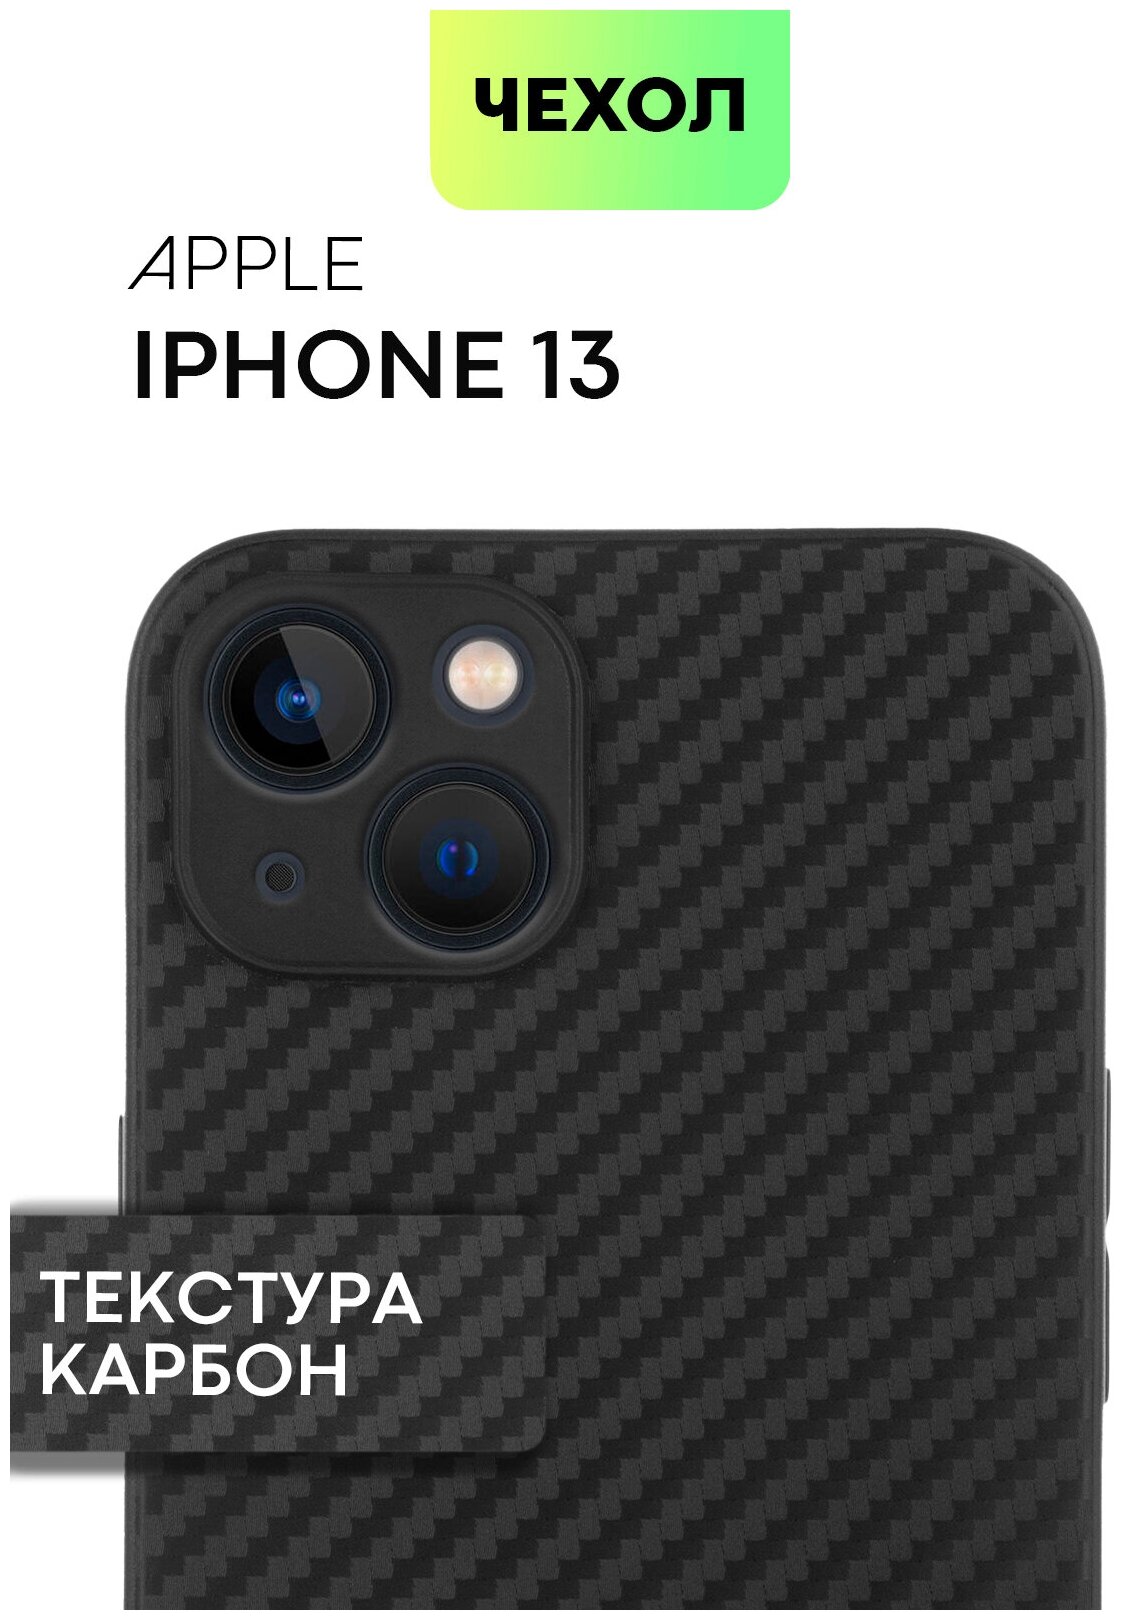 Чехол BROSCORP для Apple iPhone 13 (Эпл Айфон 13) с текстурой карбон, надежно лежит в руке и не выскальзывает, черный чехол